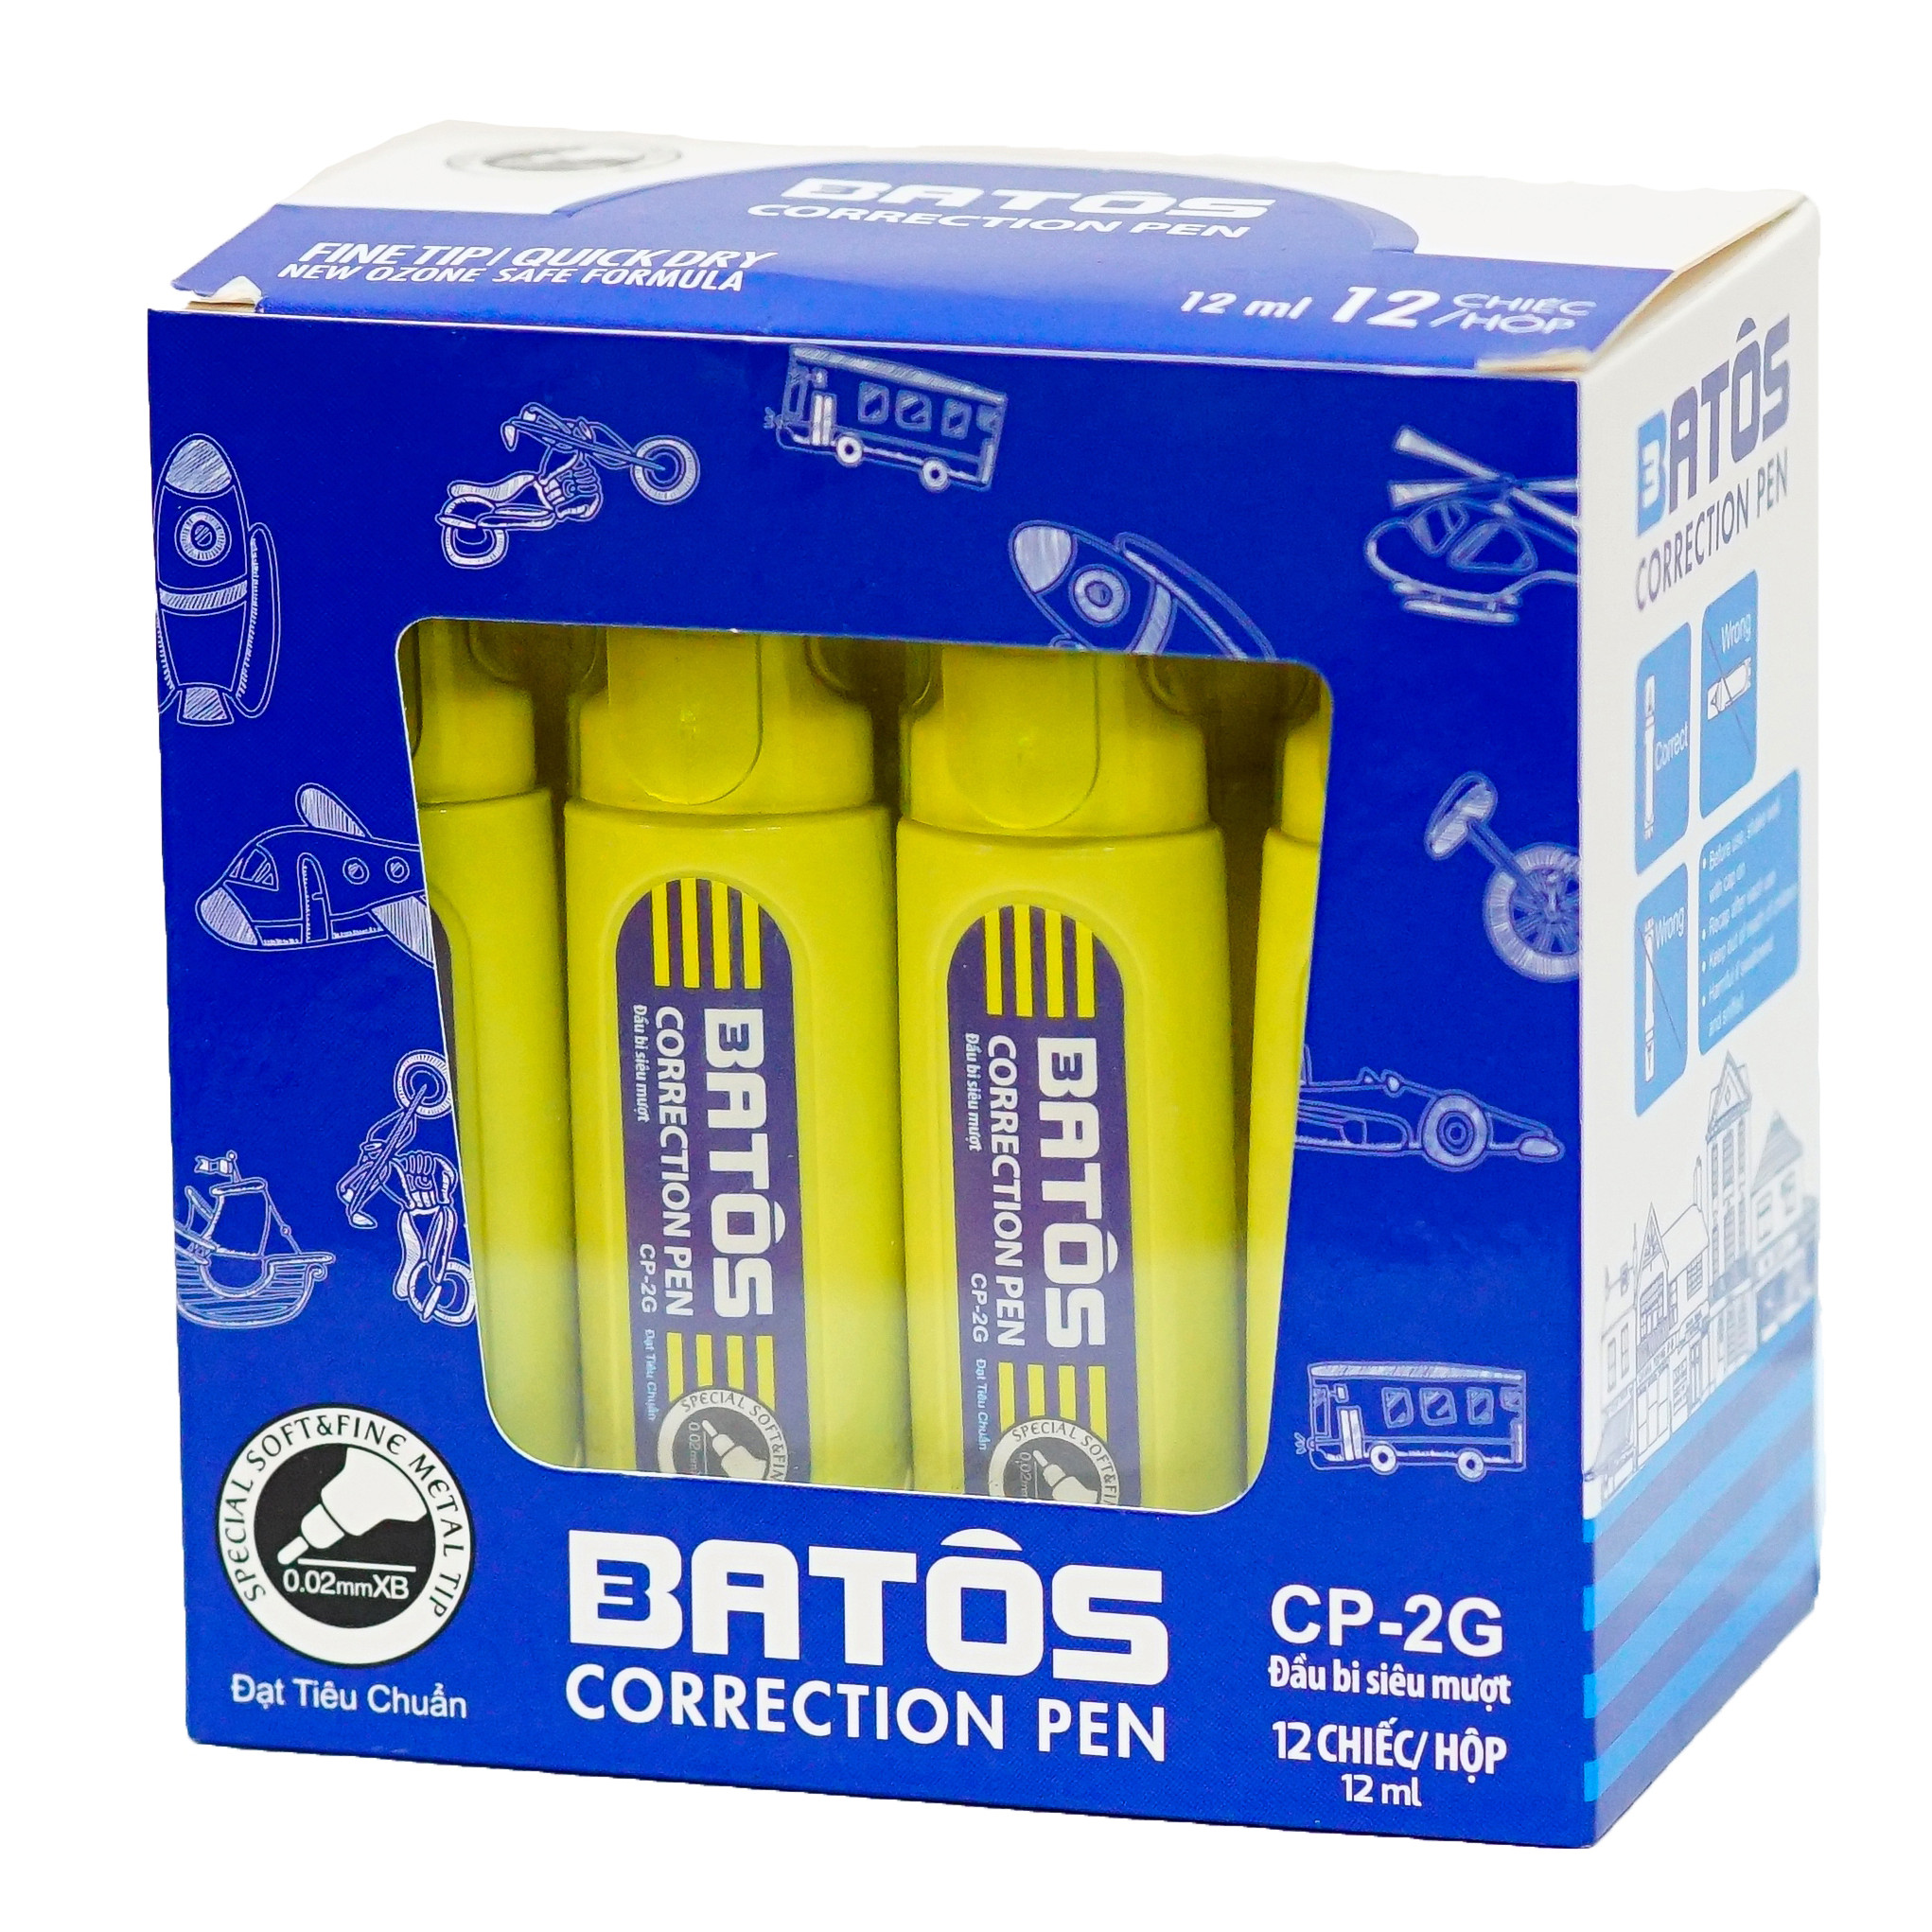 Bút xóa Batos CP-02G - Hộp 12 chiếc - Dung tích đủ 12ml, xóa nhanh khô, dễ sử dụng